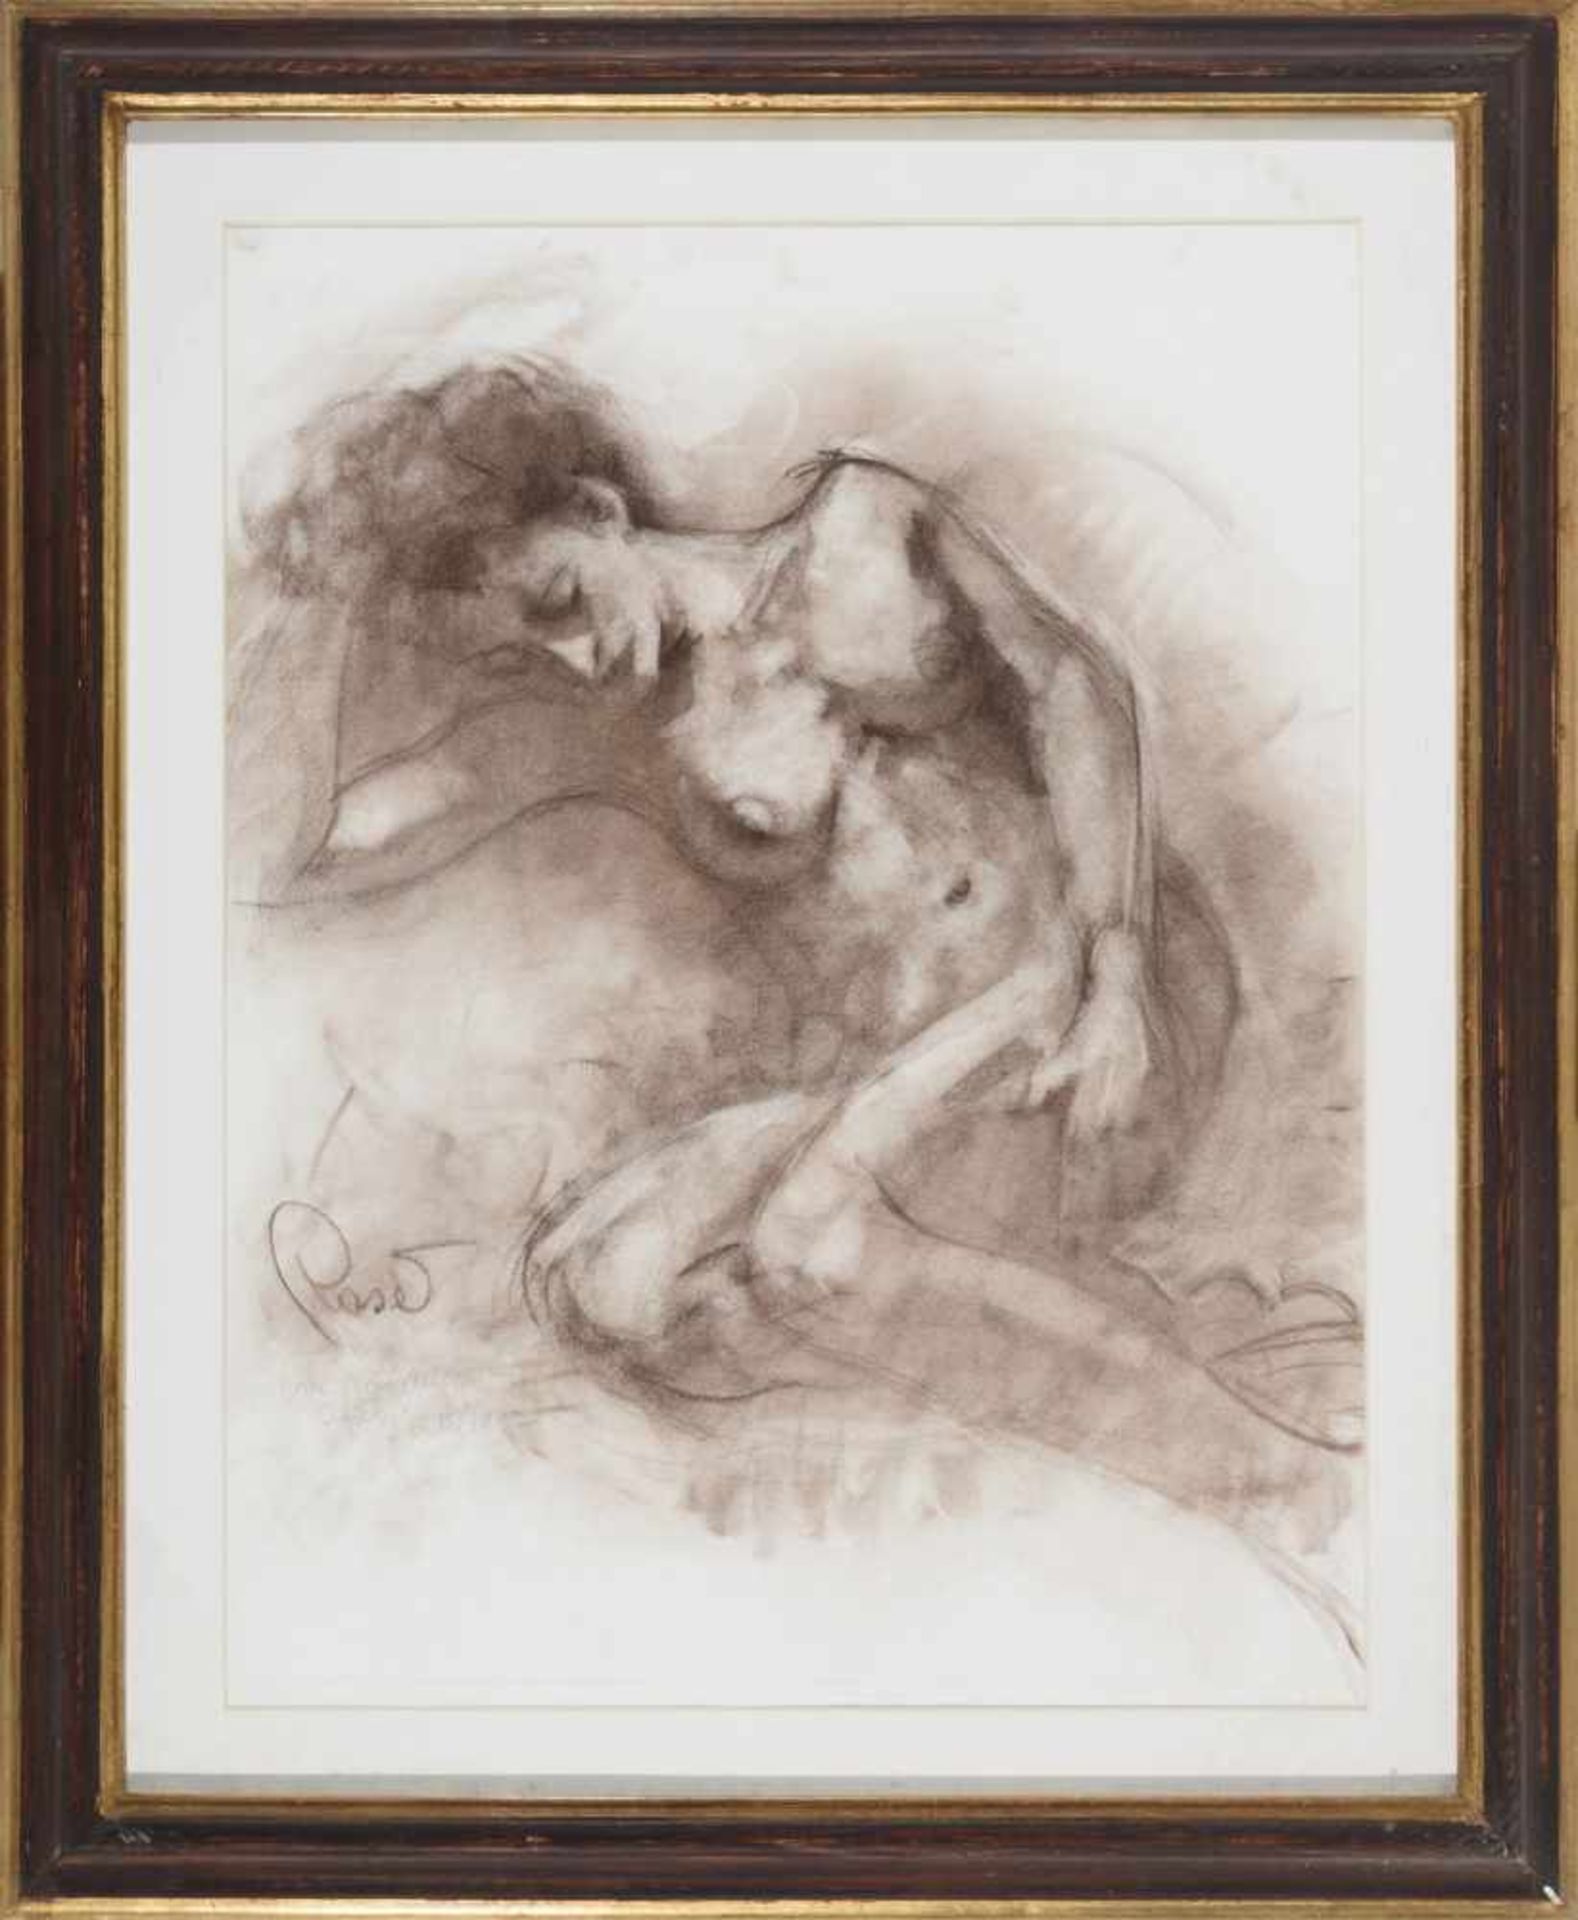 JOAN RASET (1938) Desnudo femenino Pastel sobre papel de 49 x 68 cm. Firmado y dedicado.- - -21.00 %